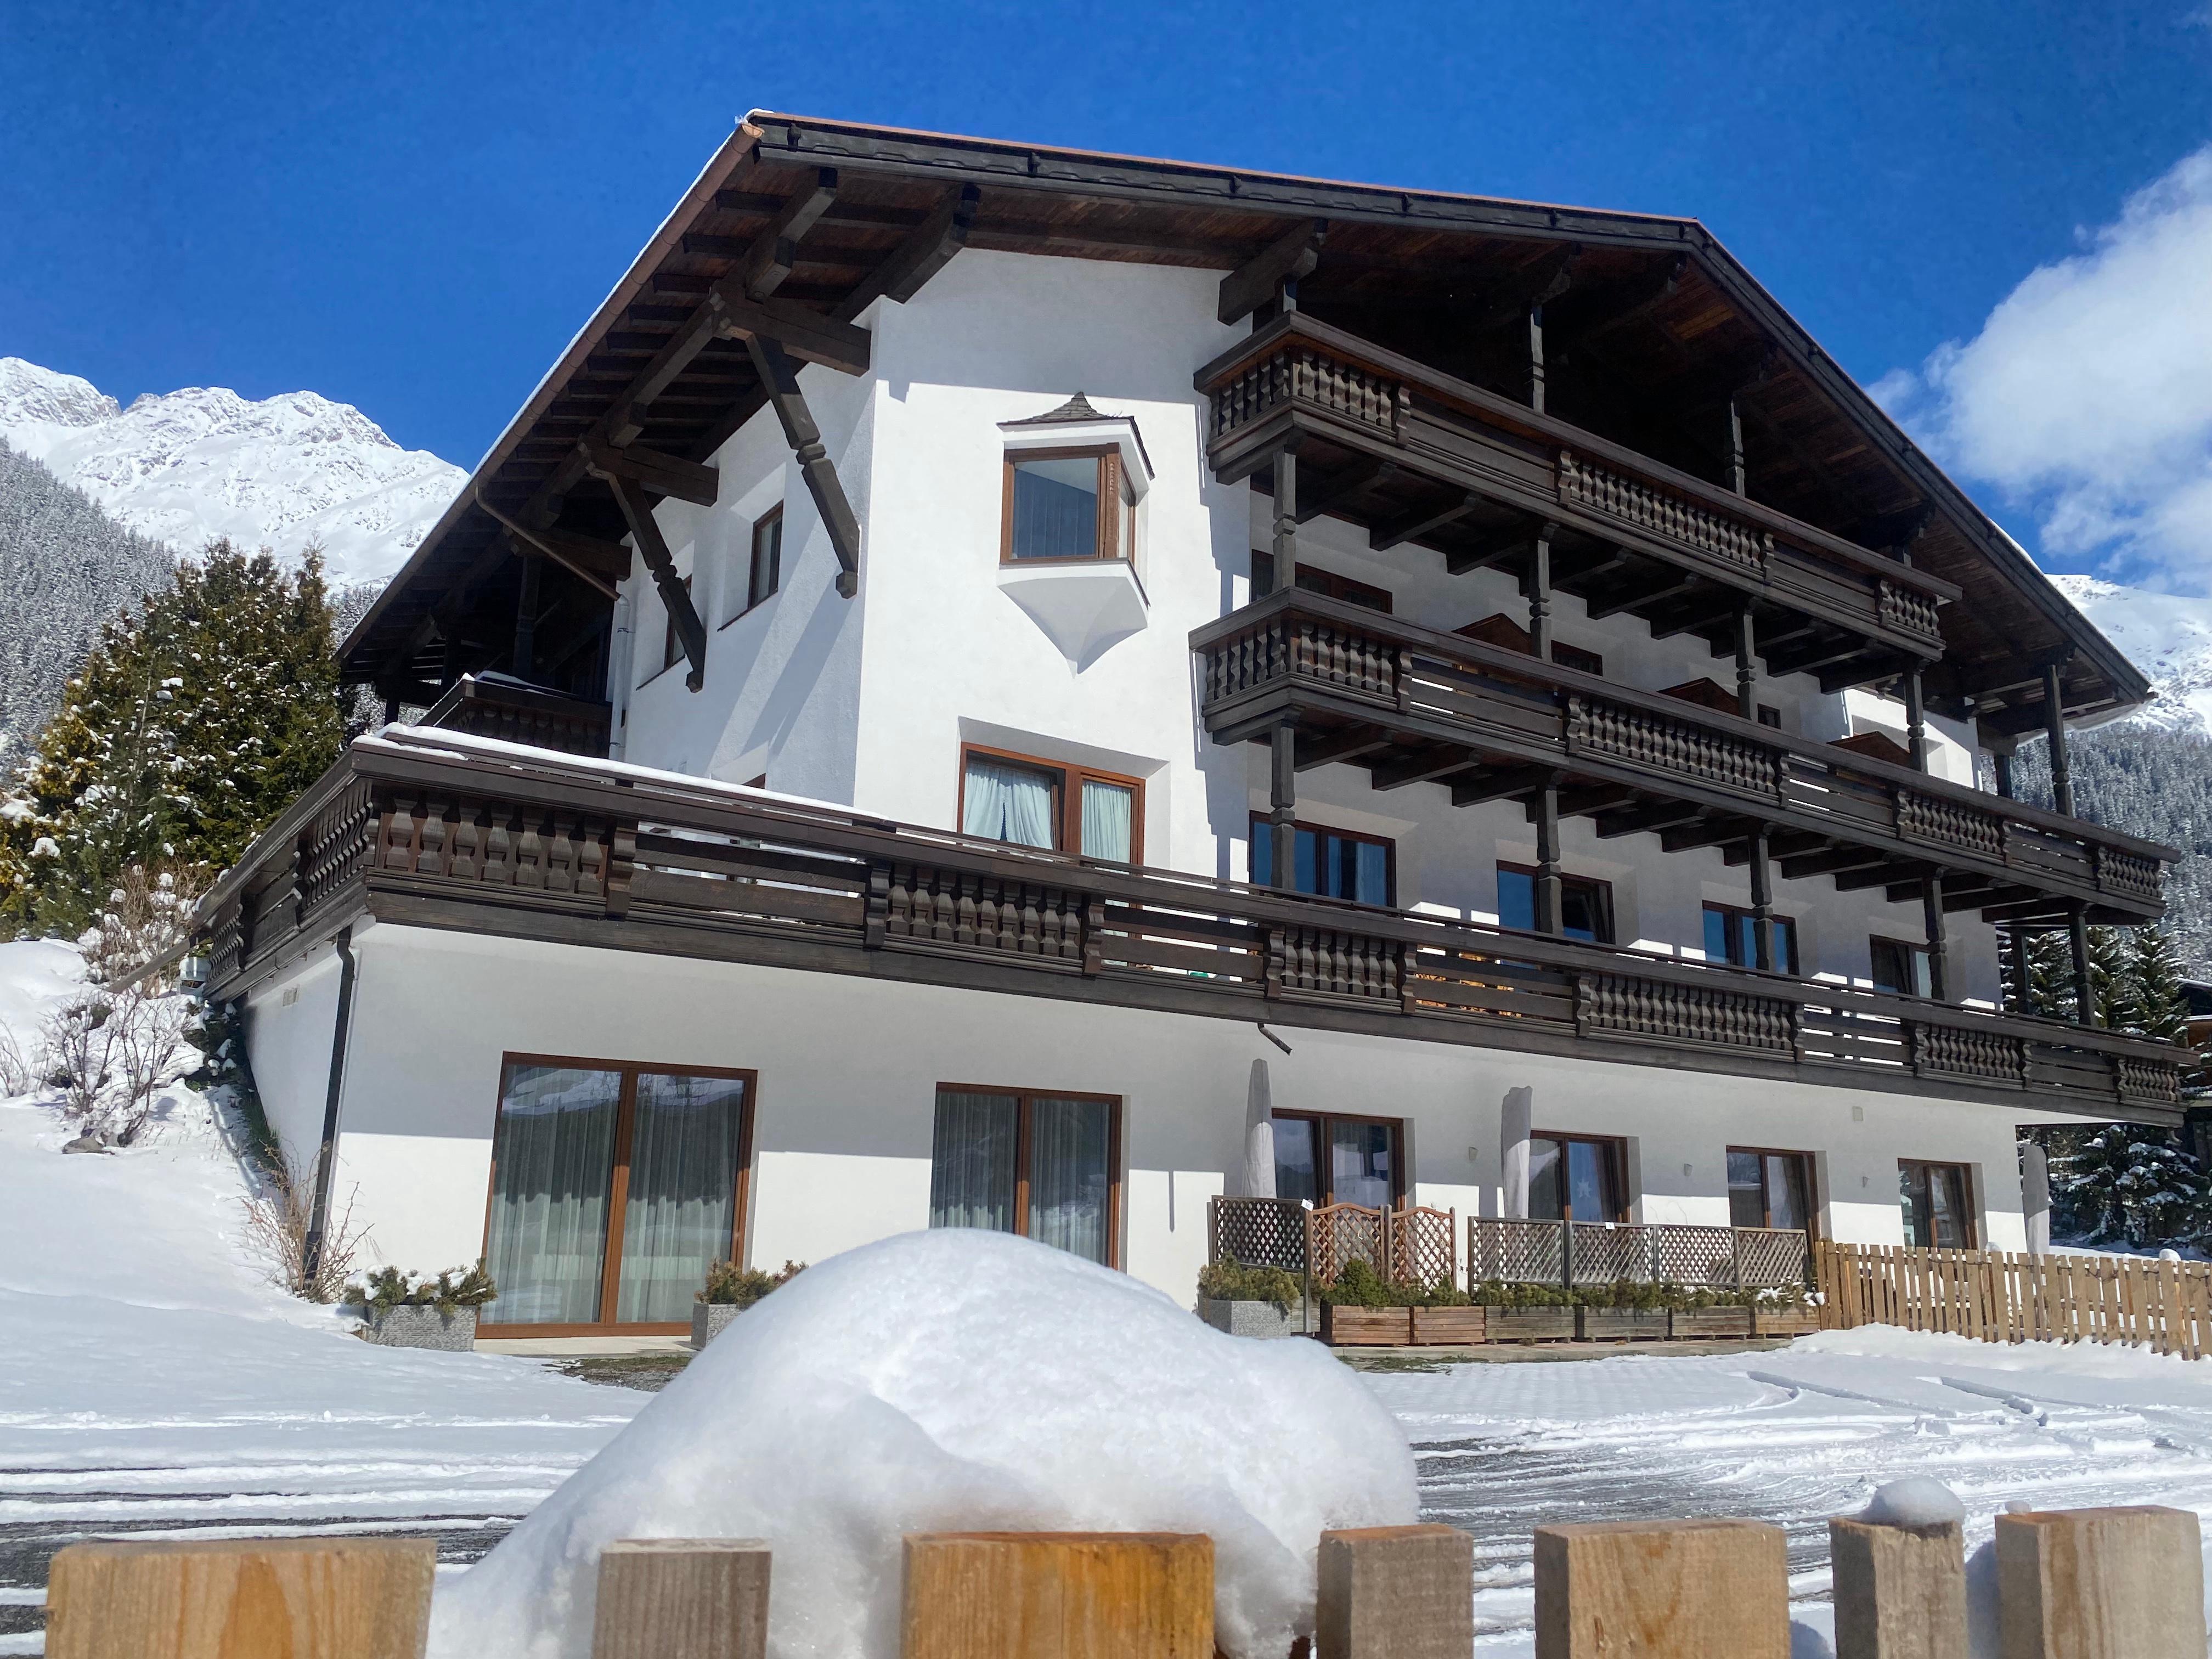 Bilder AFOCH FEI - das Landhaus in St. Anton am Arlberg